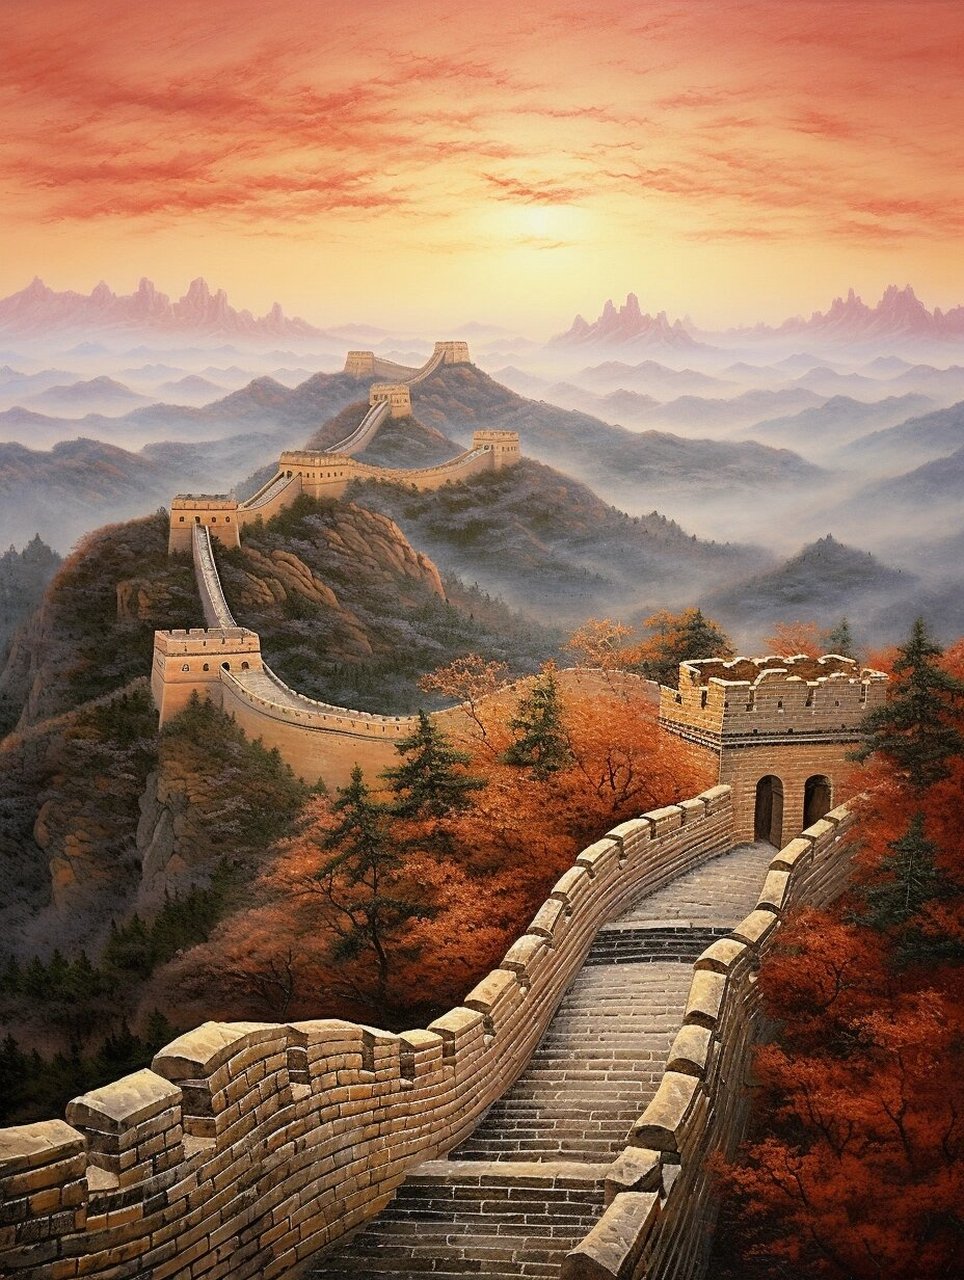 雄伟壮观的万里长城 万里长城是中华民族精神和文化的重要历史和精神